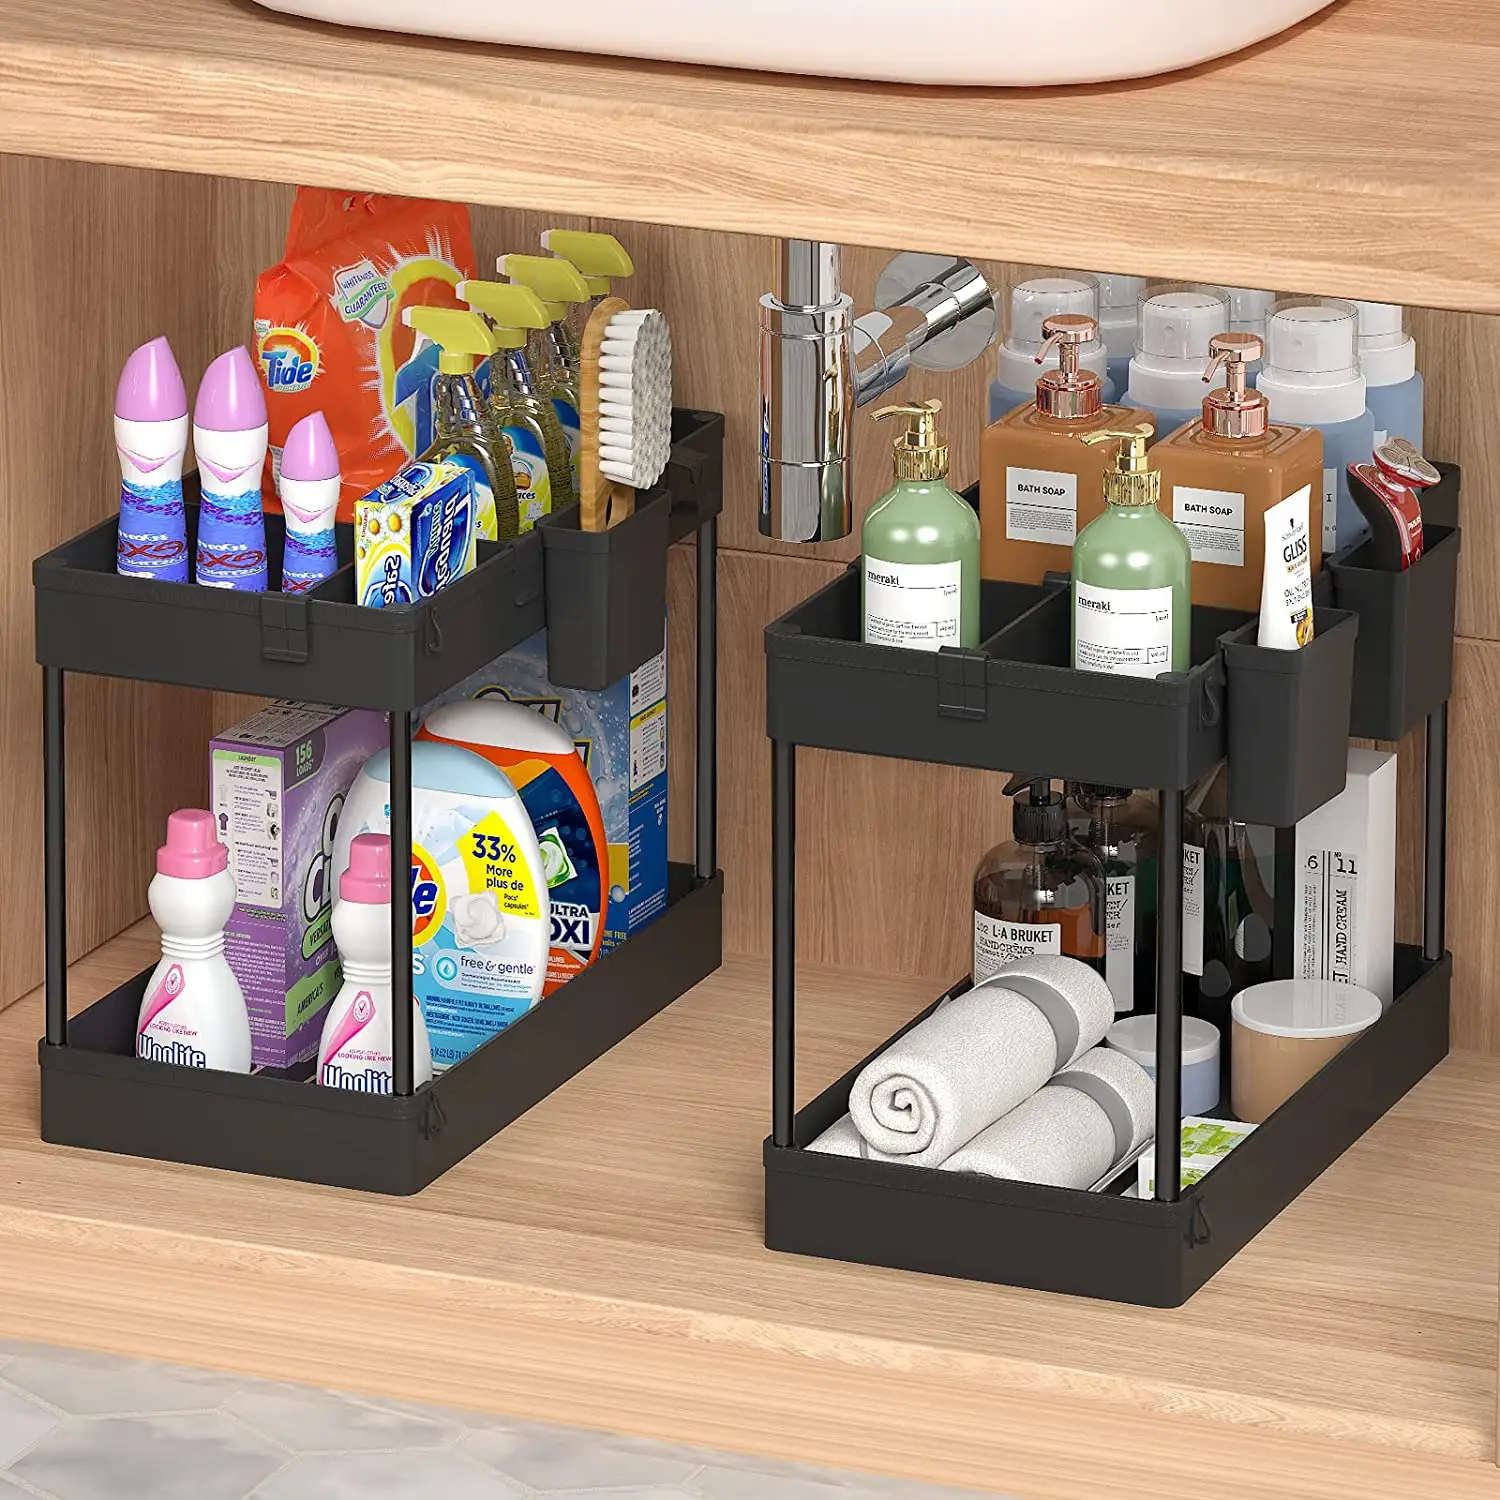 New Trends 2 Tiers Plastic PP/ABS Kitchen Bathroom Under Sink Organizer Kitchen Accessories